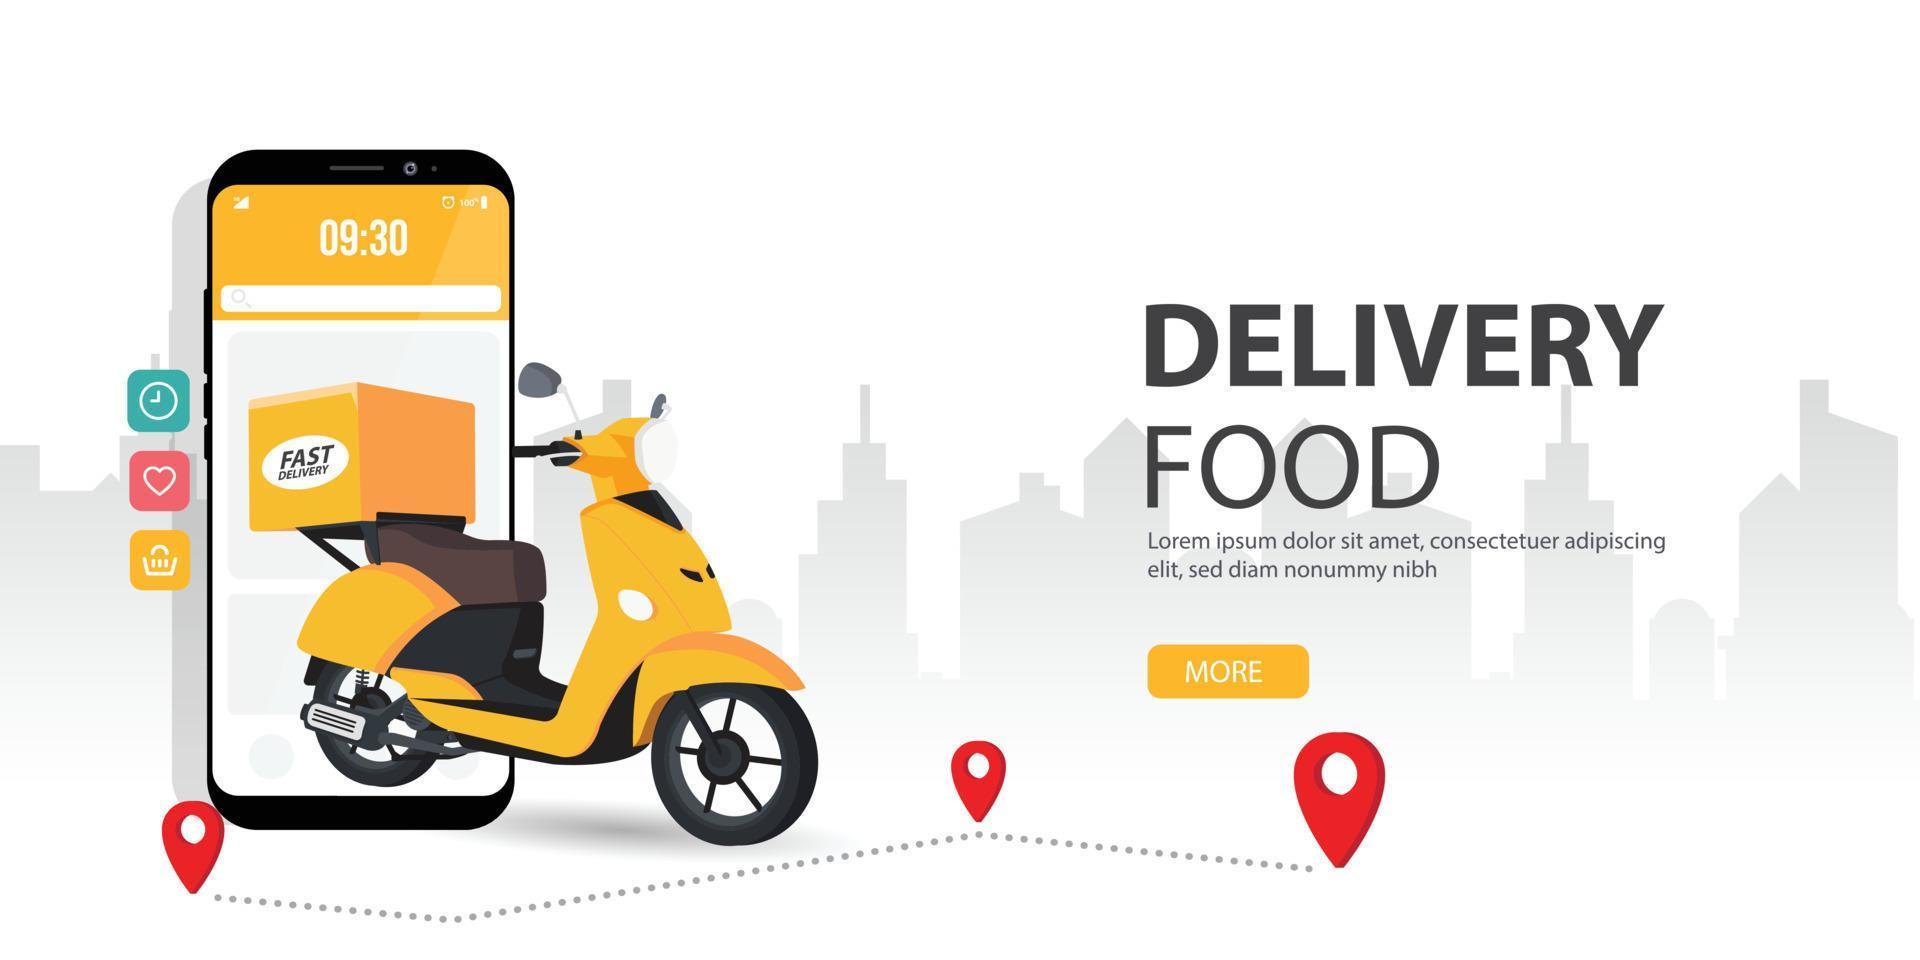 pedidos de comida en línea. ilustración del concepto de vector de la pantalla del teléfono inteligente móvil con mensajero de entrega con comida. representa un concepto de pedido de comida en línea.